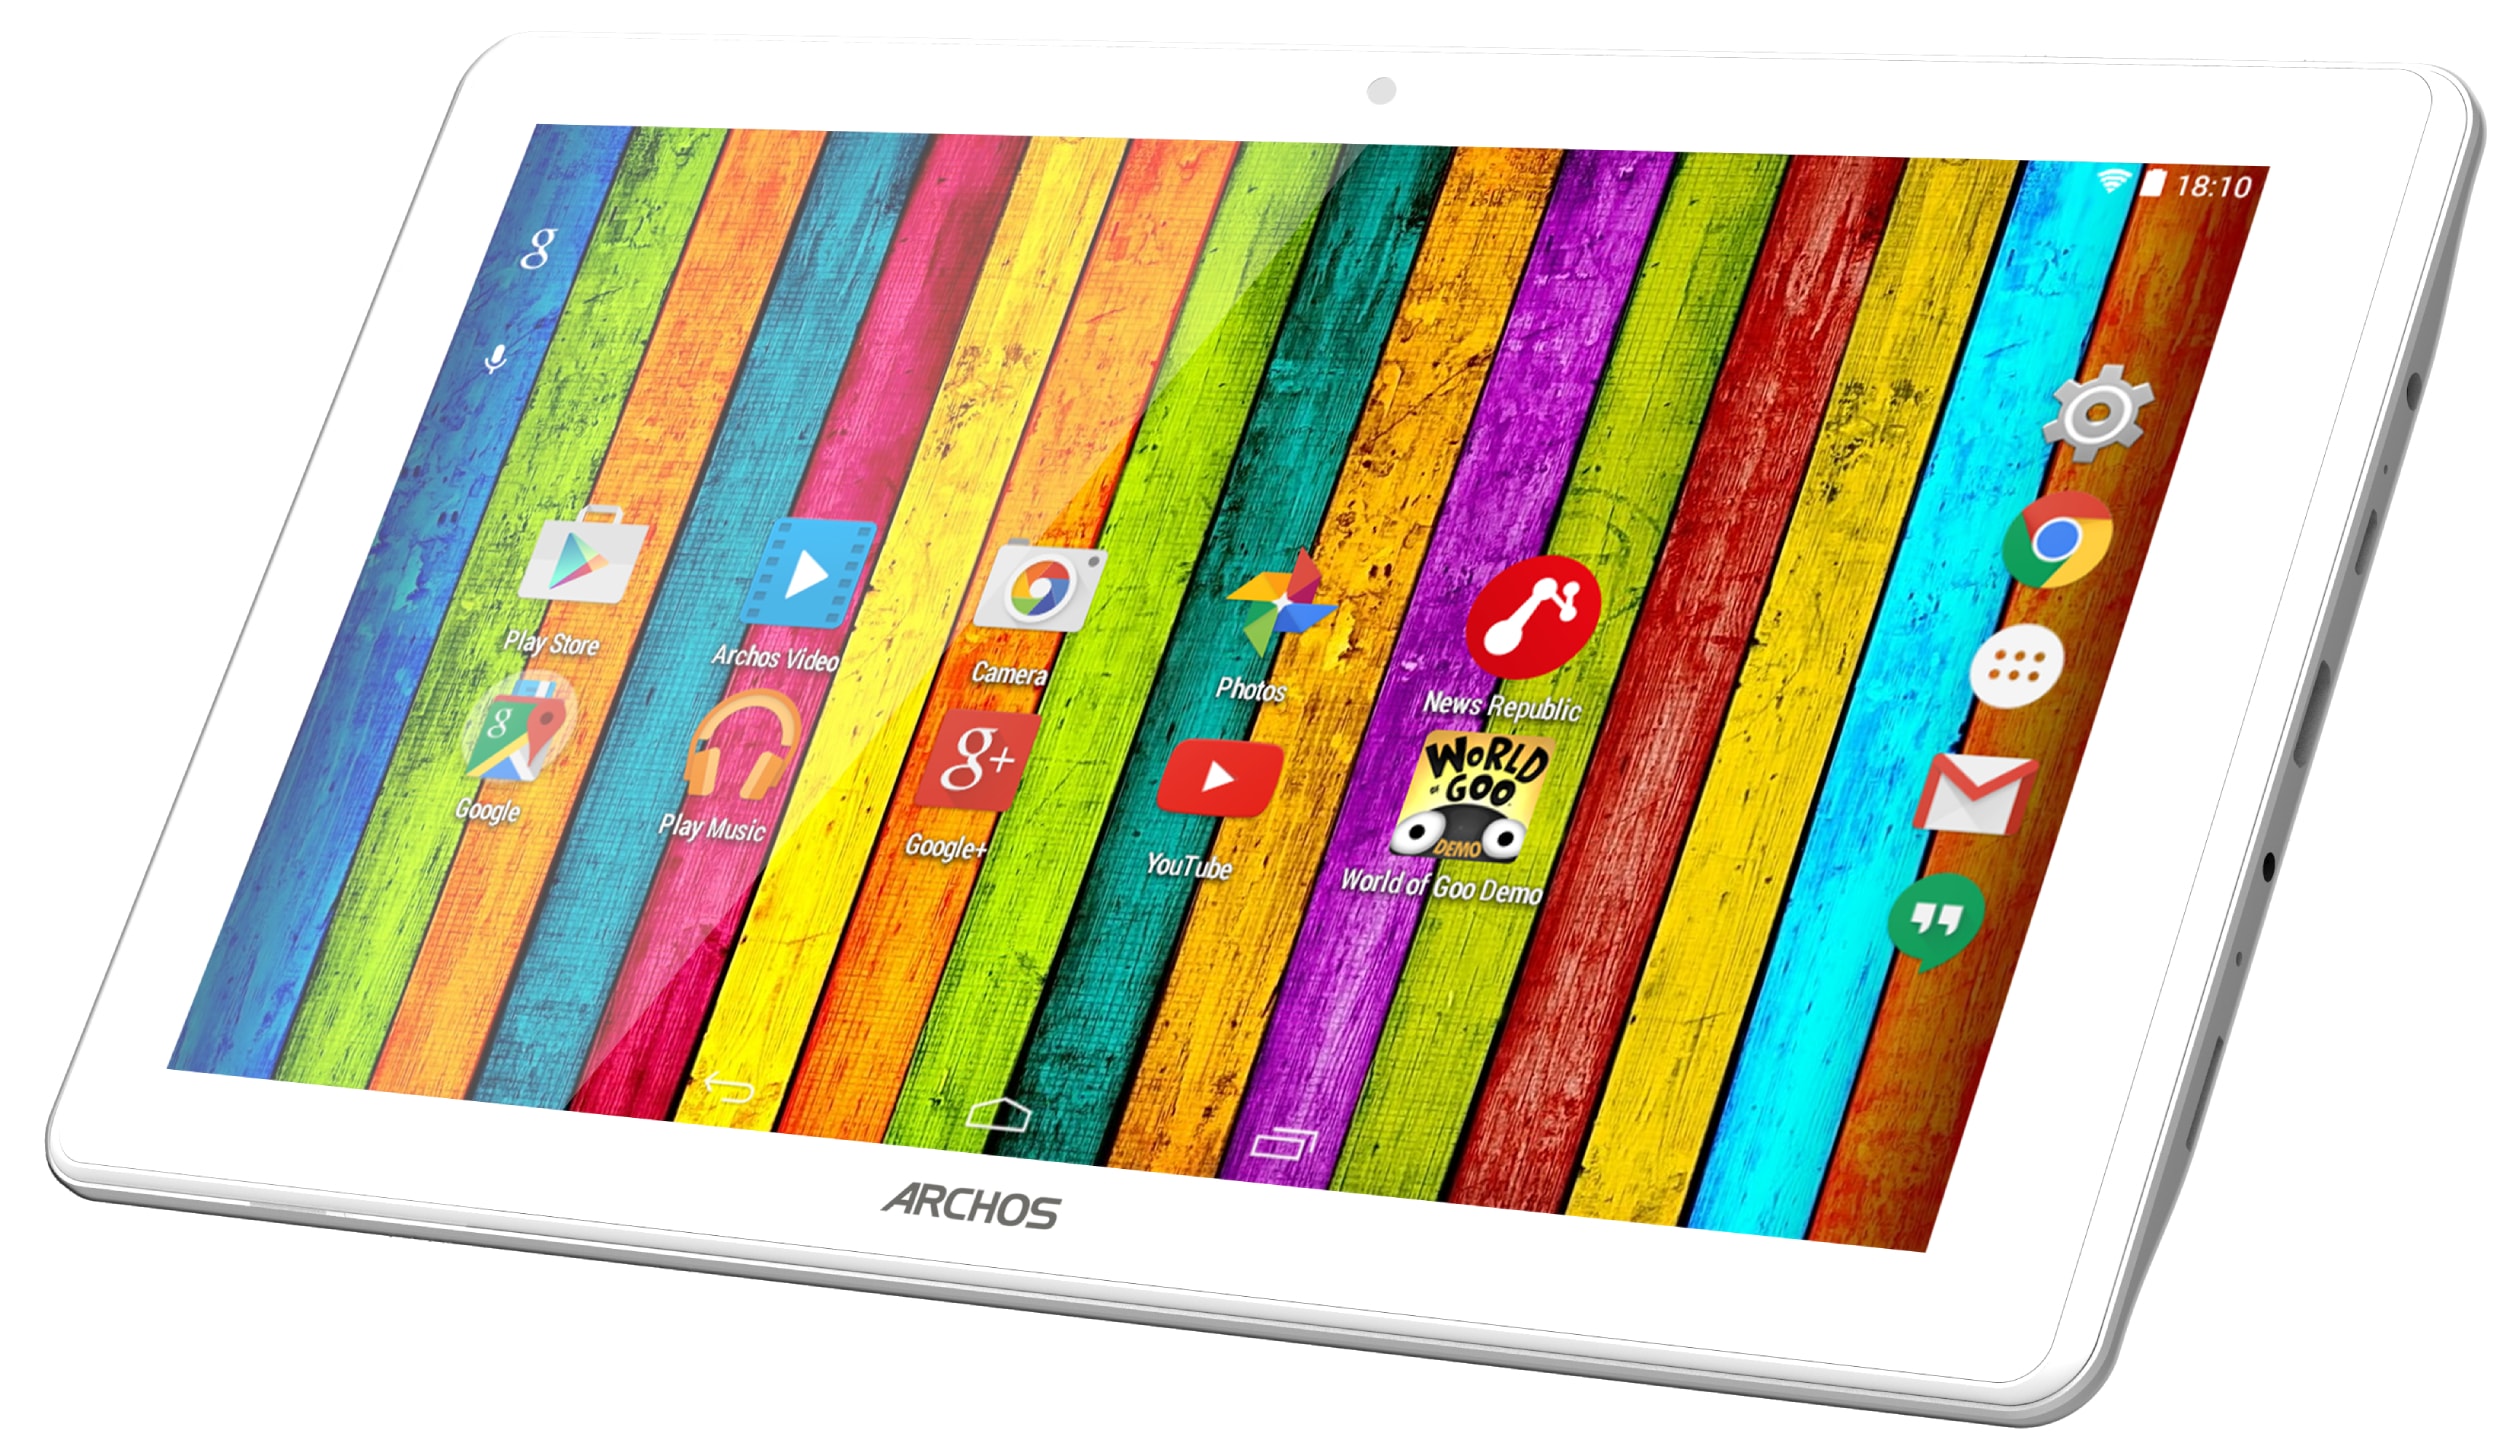 Samsung Galaxy Tab A Tablette de 10,1 pouces, écran Full HD, WiFi,  processeur 8 Cœurs Cortex-A53, 2 Go de RAM, 32 Go de stockage, Android 6,0